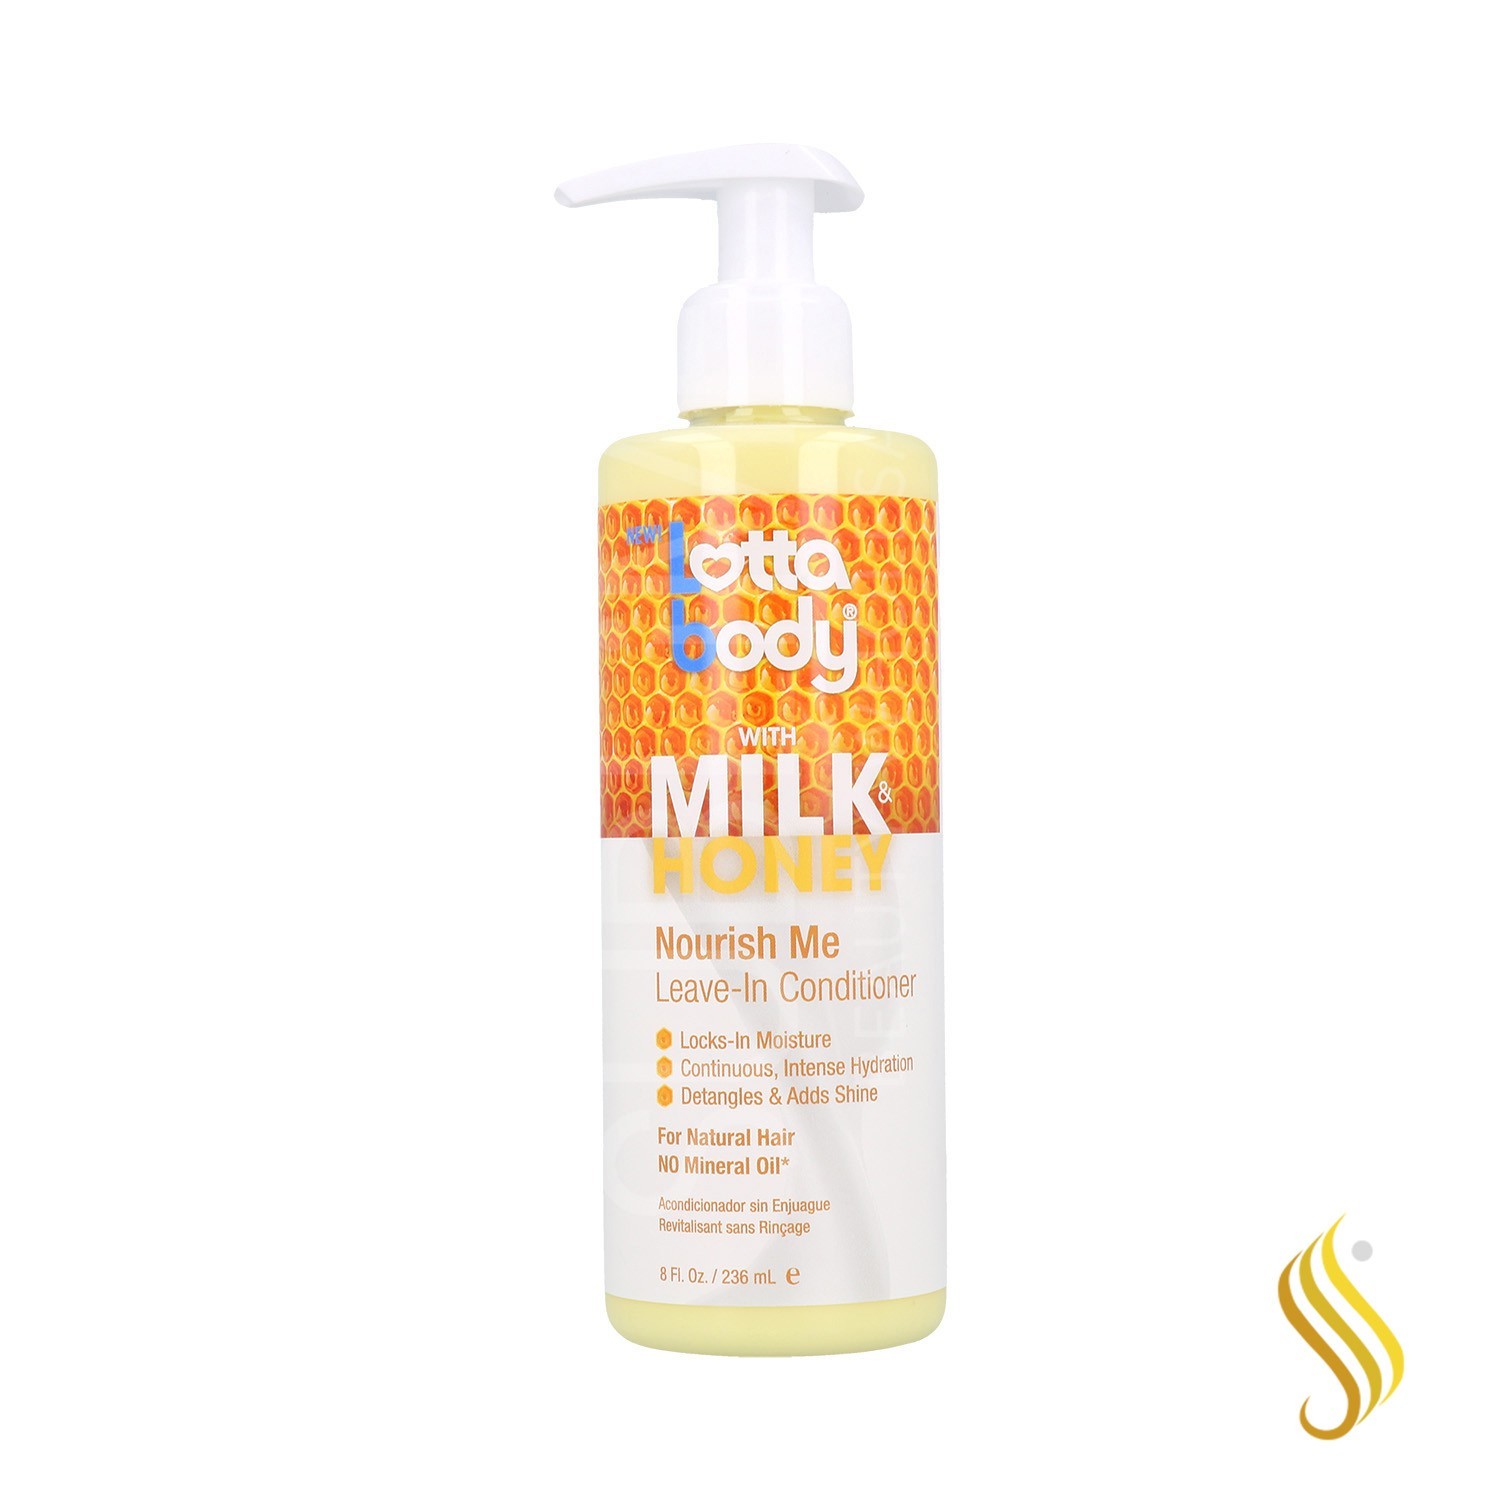 Lottabody Milk & Honey Leave-In Acondicionador 236 ml (Nourish Me)